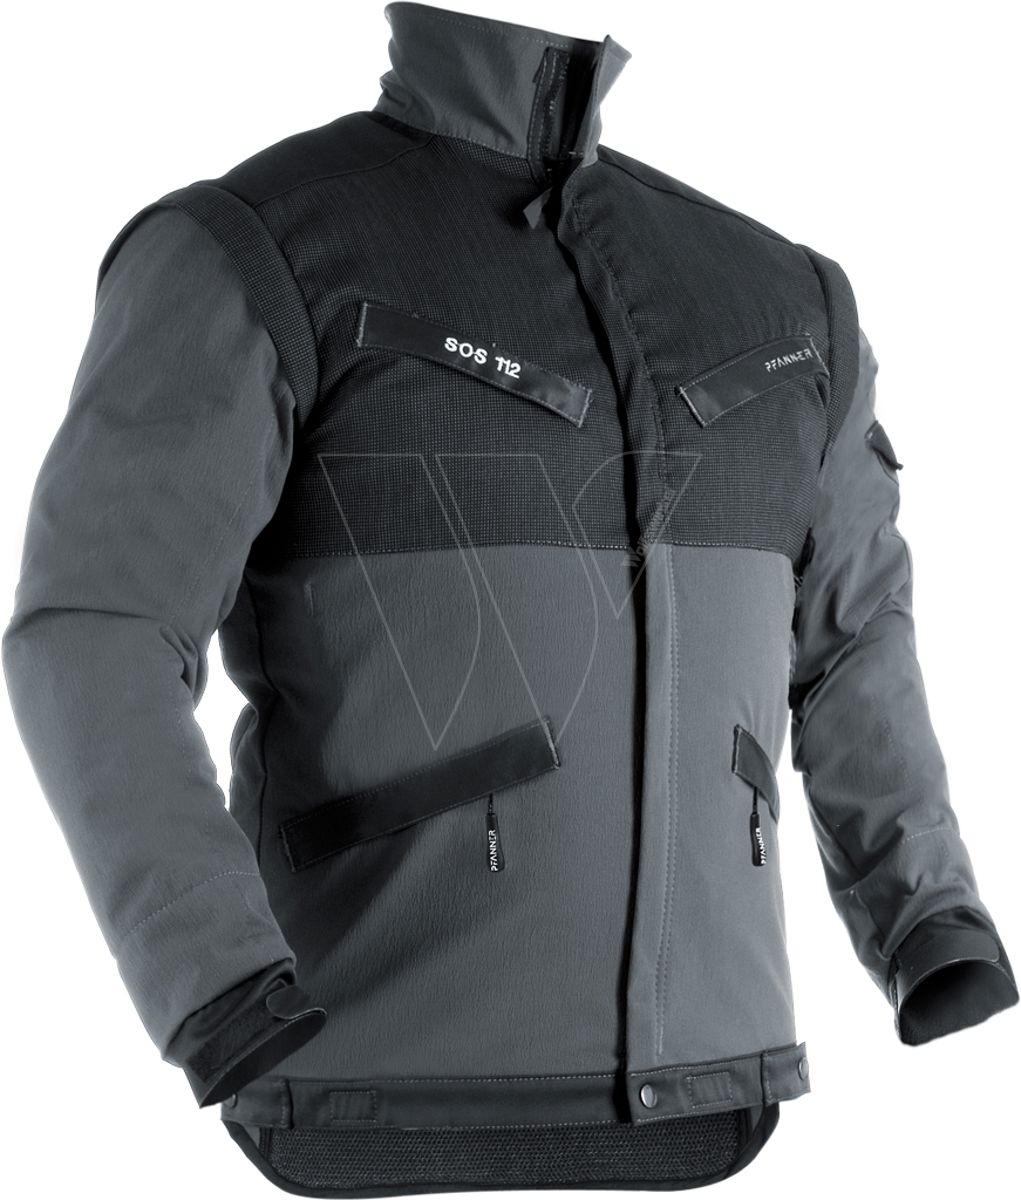 Pfanner klimaair® reflex jacket grey m